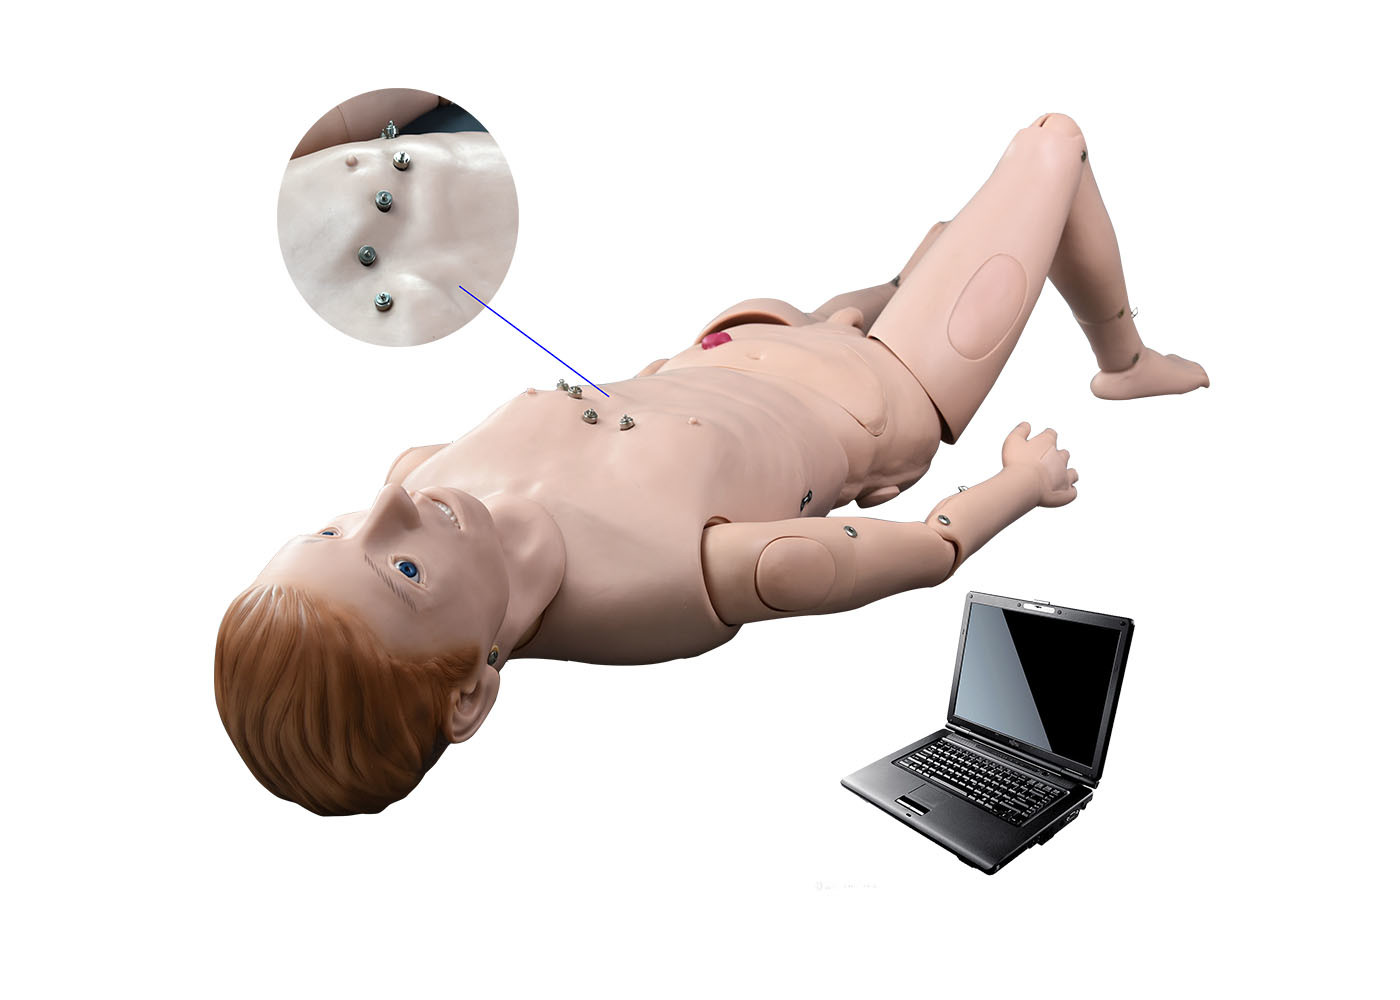 การจำลองสถานการณ์ของโรงพยาบาล / Auscultation Manikin ด้วยระบบการเรียนการสอนแบบ ECG Simulated Teaching System